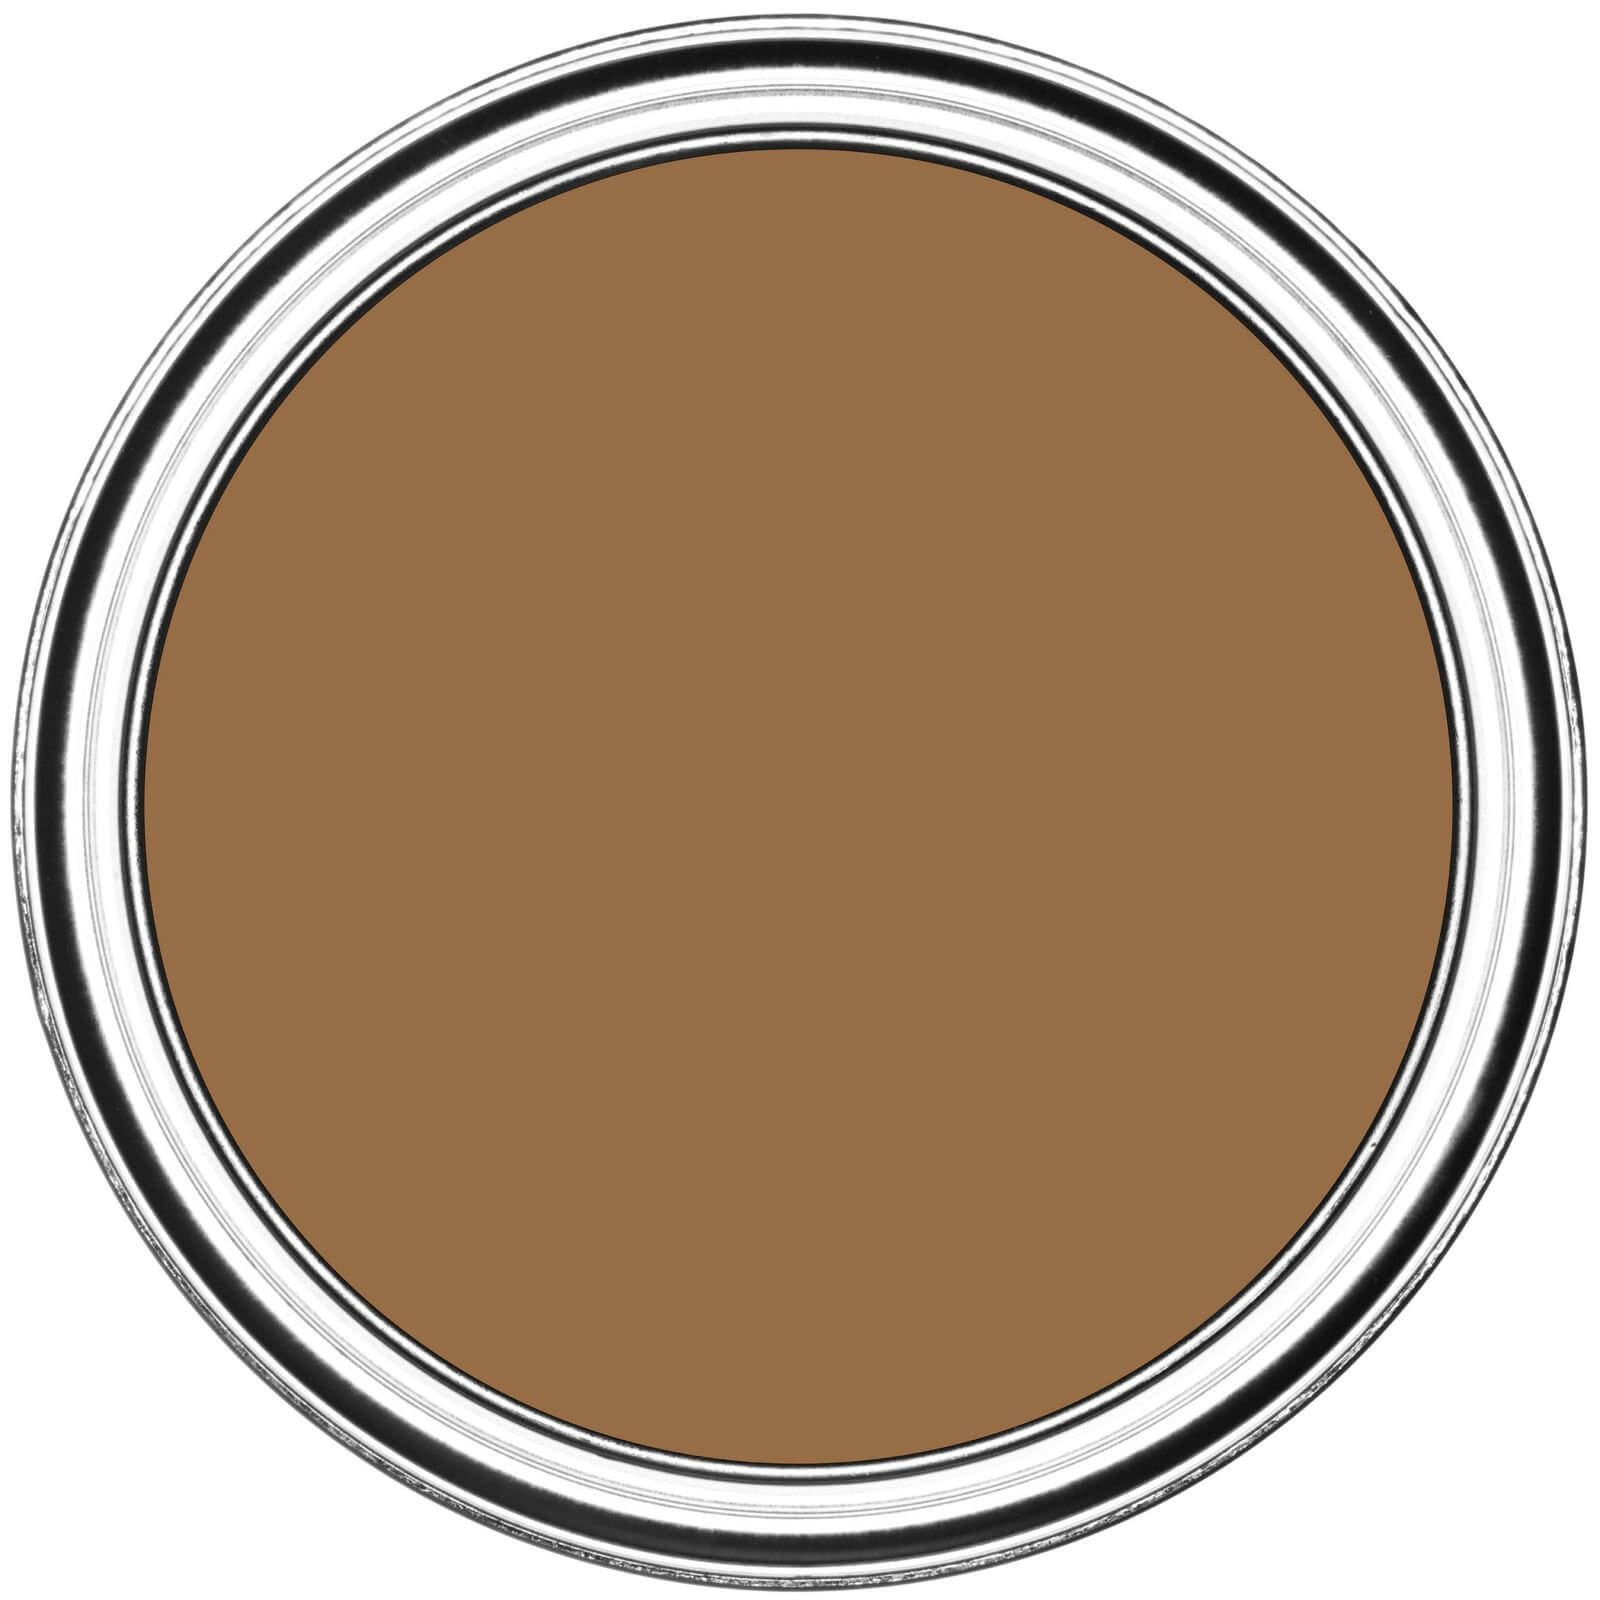 Rust-Oleum Elegant Finish Paint Metallic Gold - 250ml